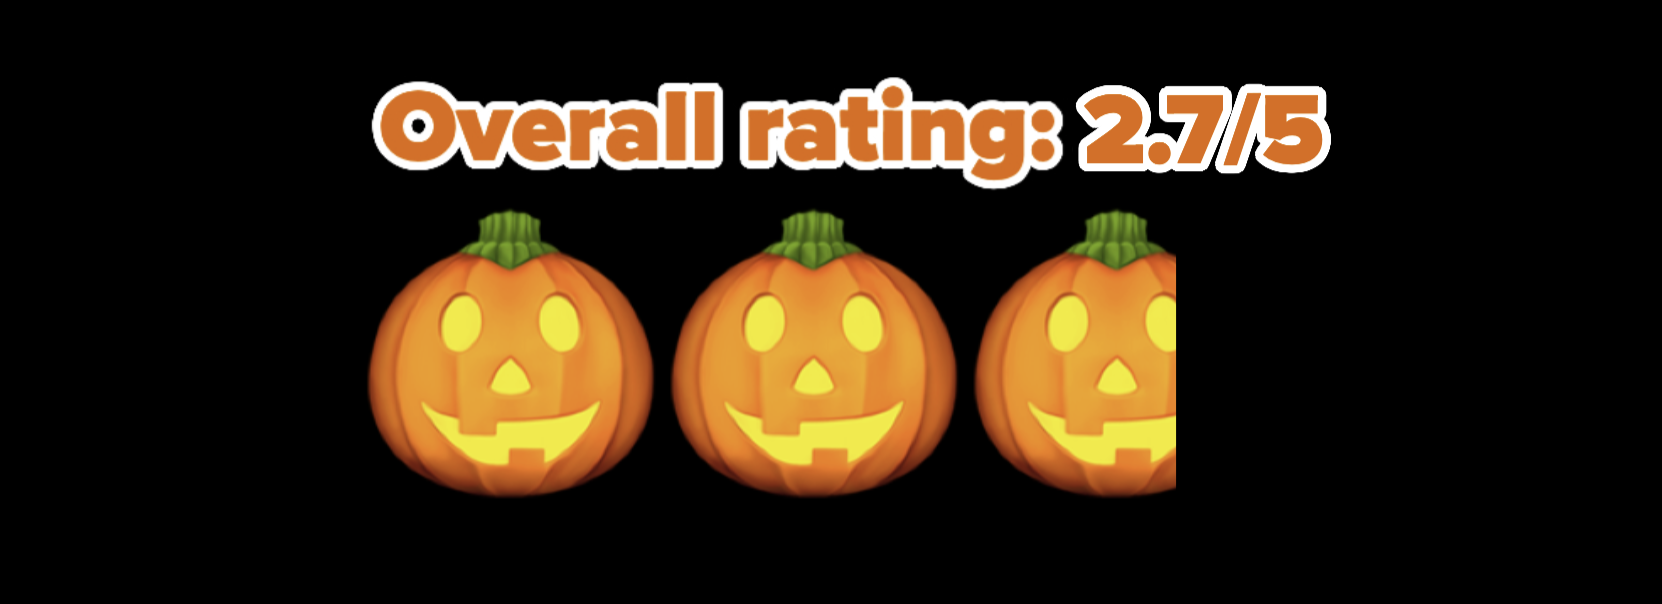 2.7/5 pumpkin rating